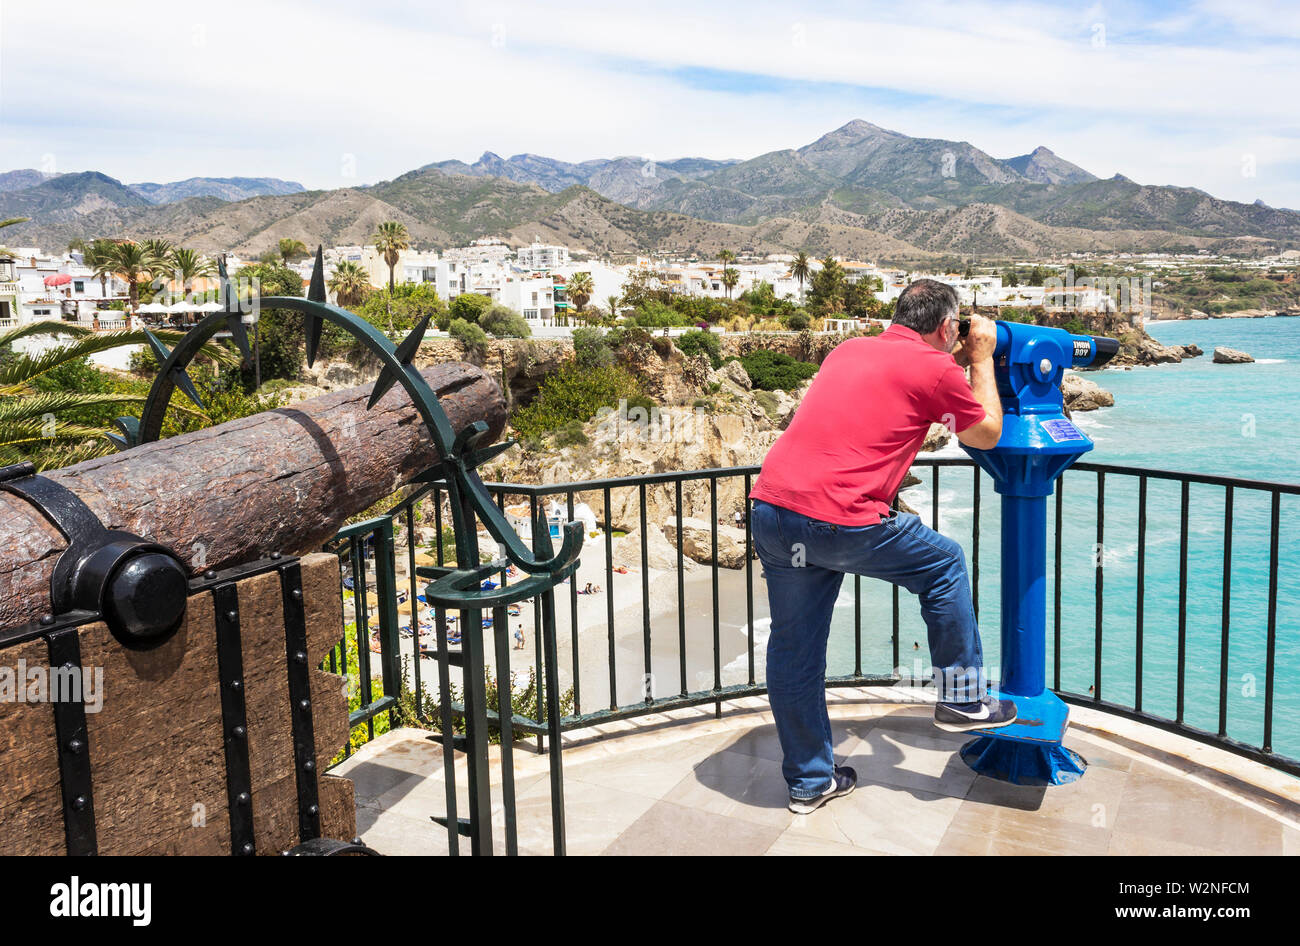 Nerja, Malaga, Costa del Sol, Andalusia, Spagna. Uomo che guarda la vista attraverso un telescopio. Foto Stock